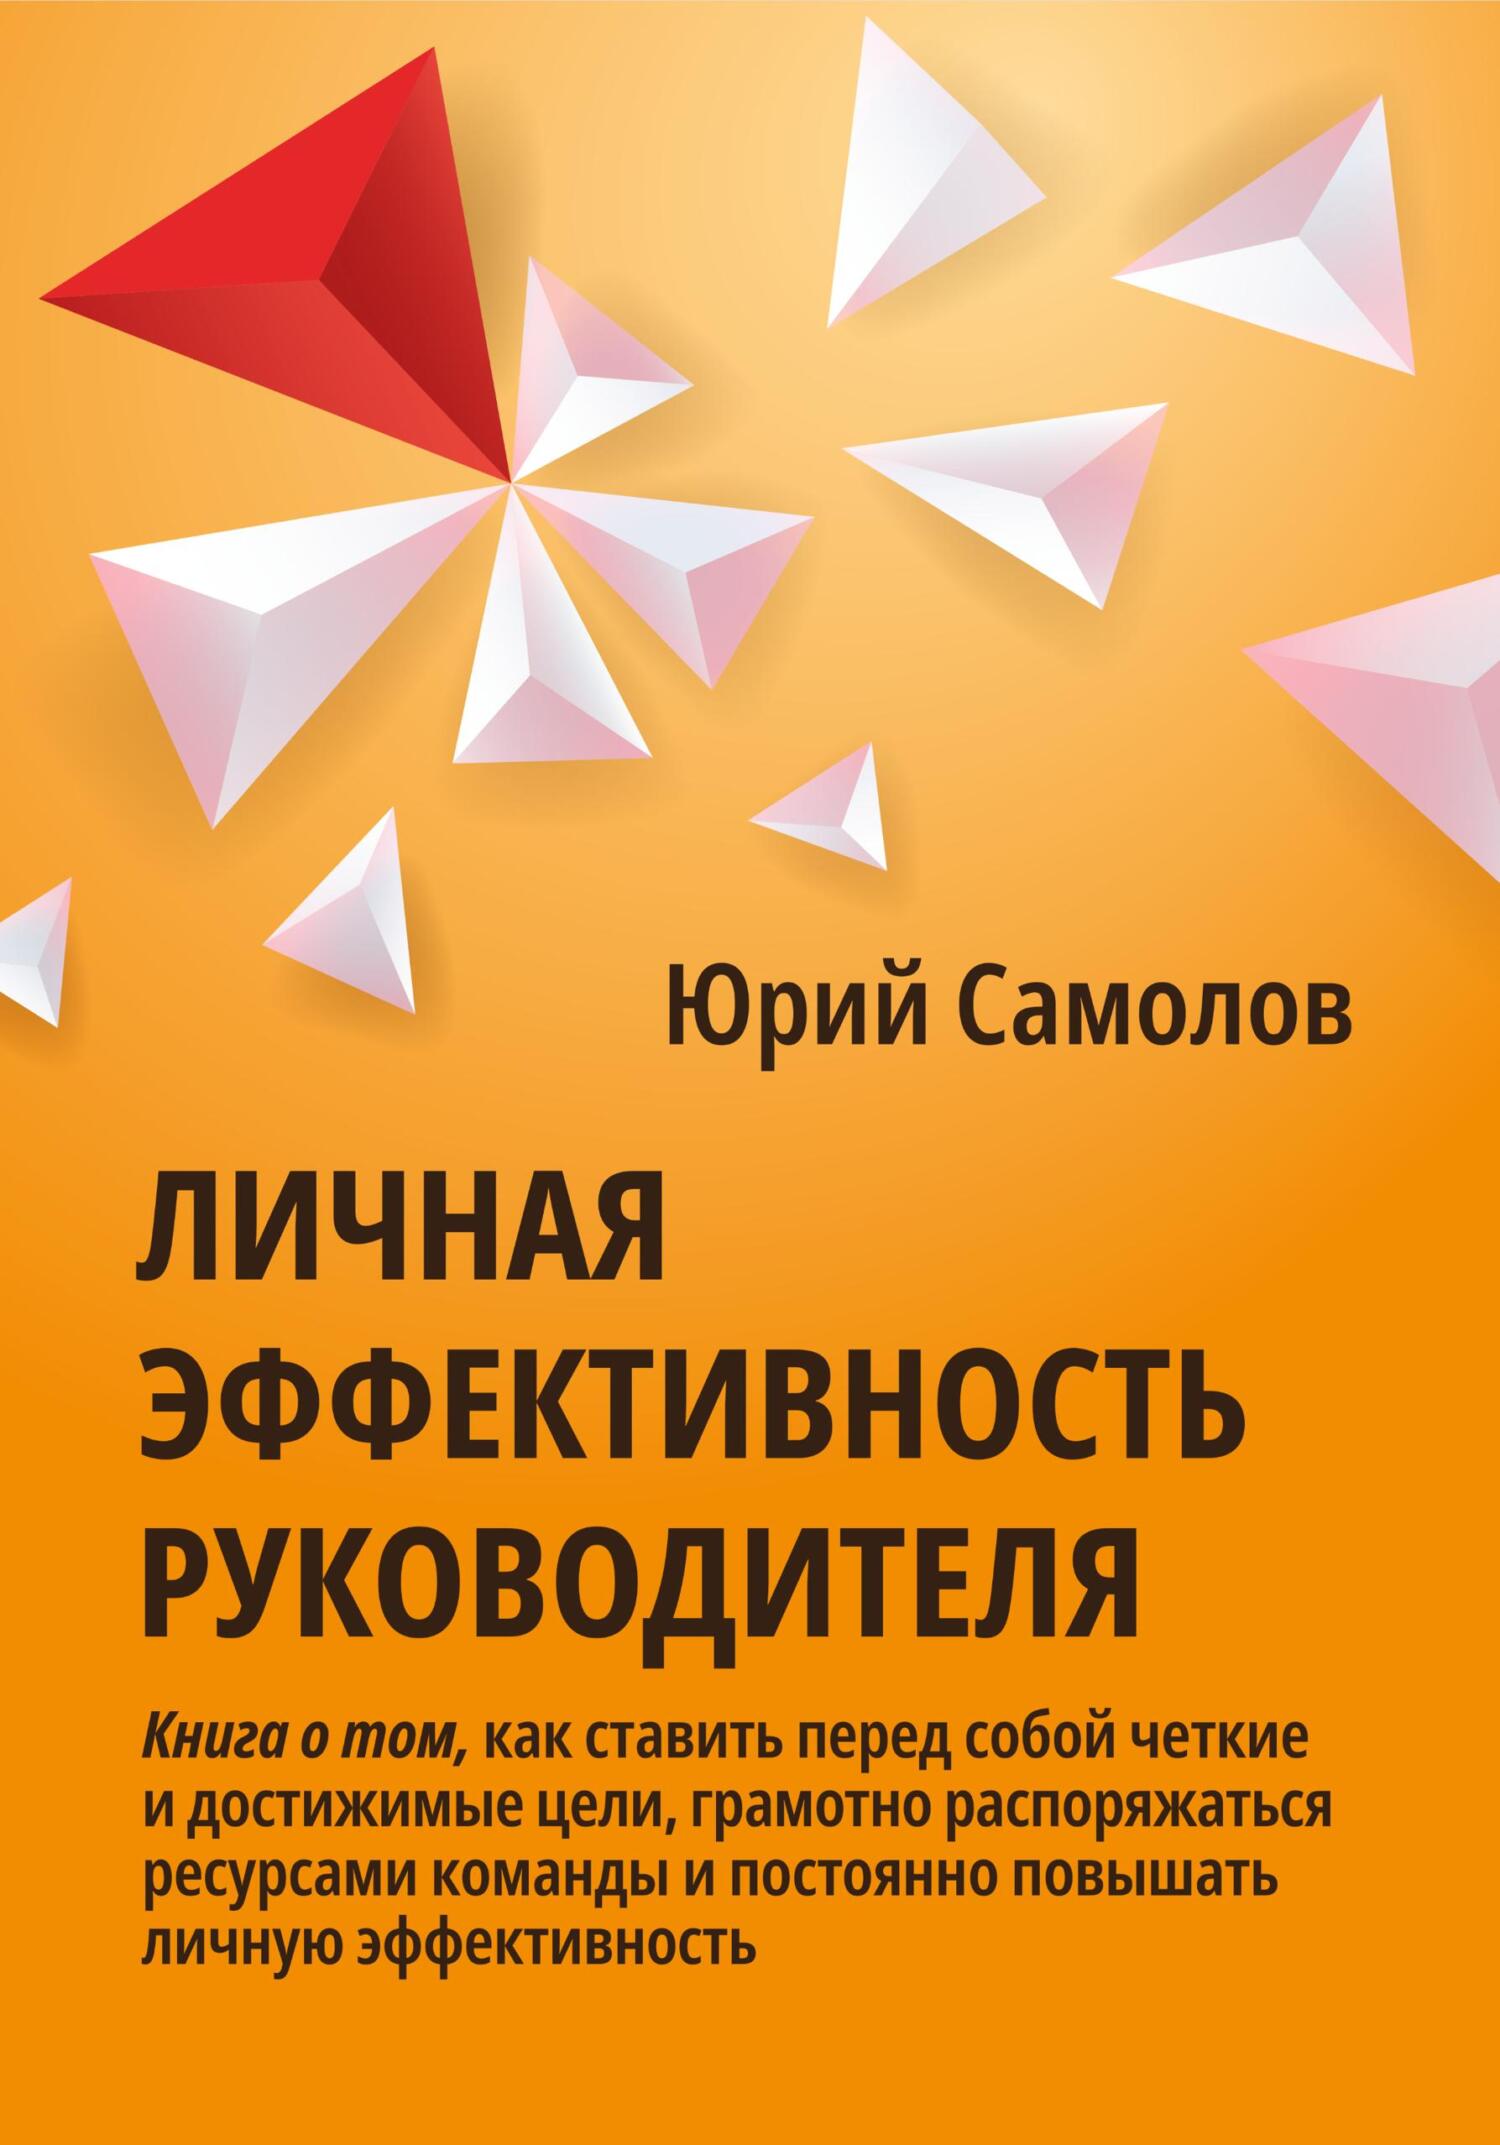 Книга  Личная эффективность руководителя созданная Юрий Самолов может относится к жанру классический маркетинг, маркетинг для новичков, менеджмент и кадры. Стоимость электронной книги Личная эффективность руководителя с идентификатором 68773587 составляет 199.00 руб.